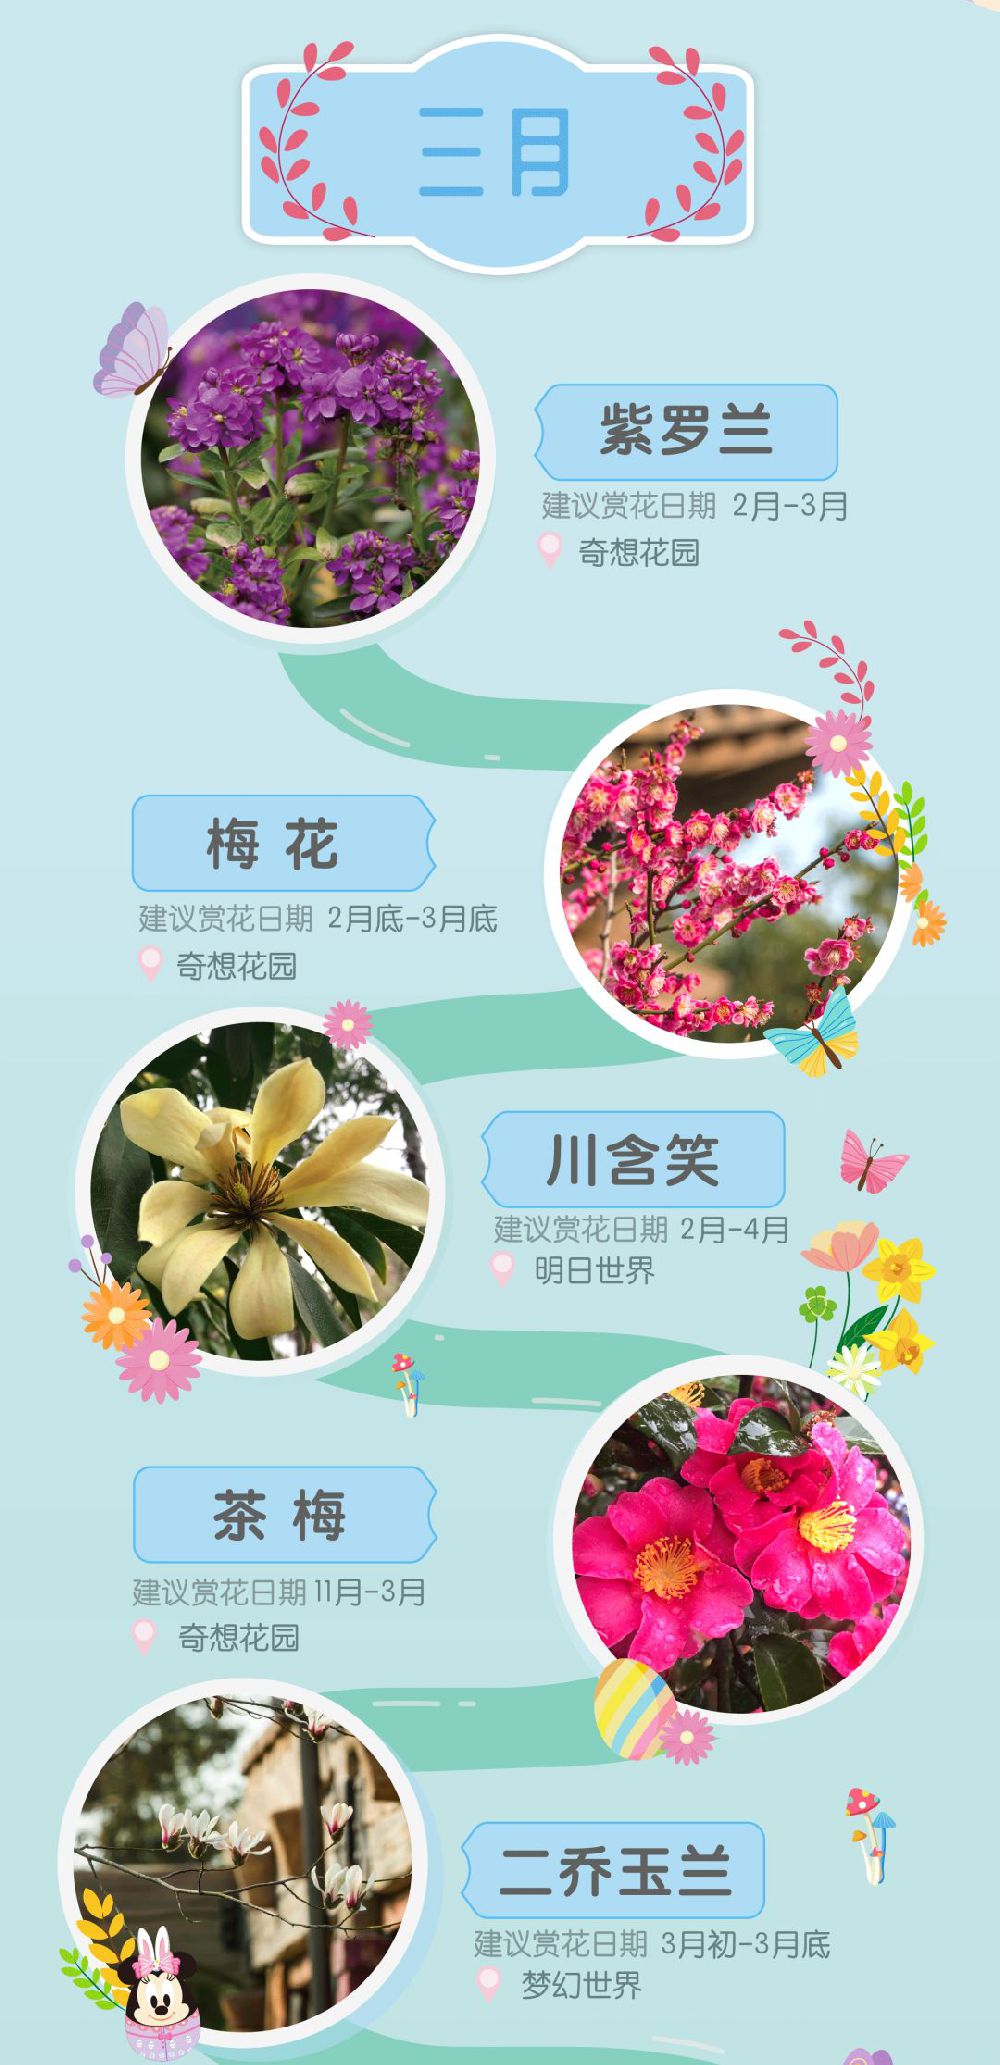 上海已入春迪士尼度假区19春季赏花指南发布 上海本地宝